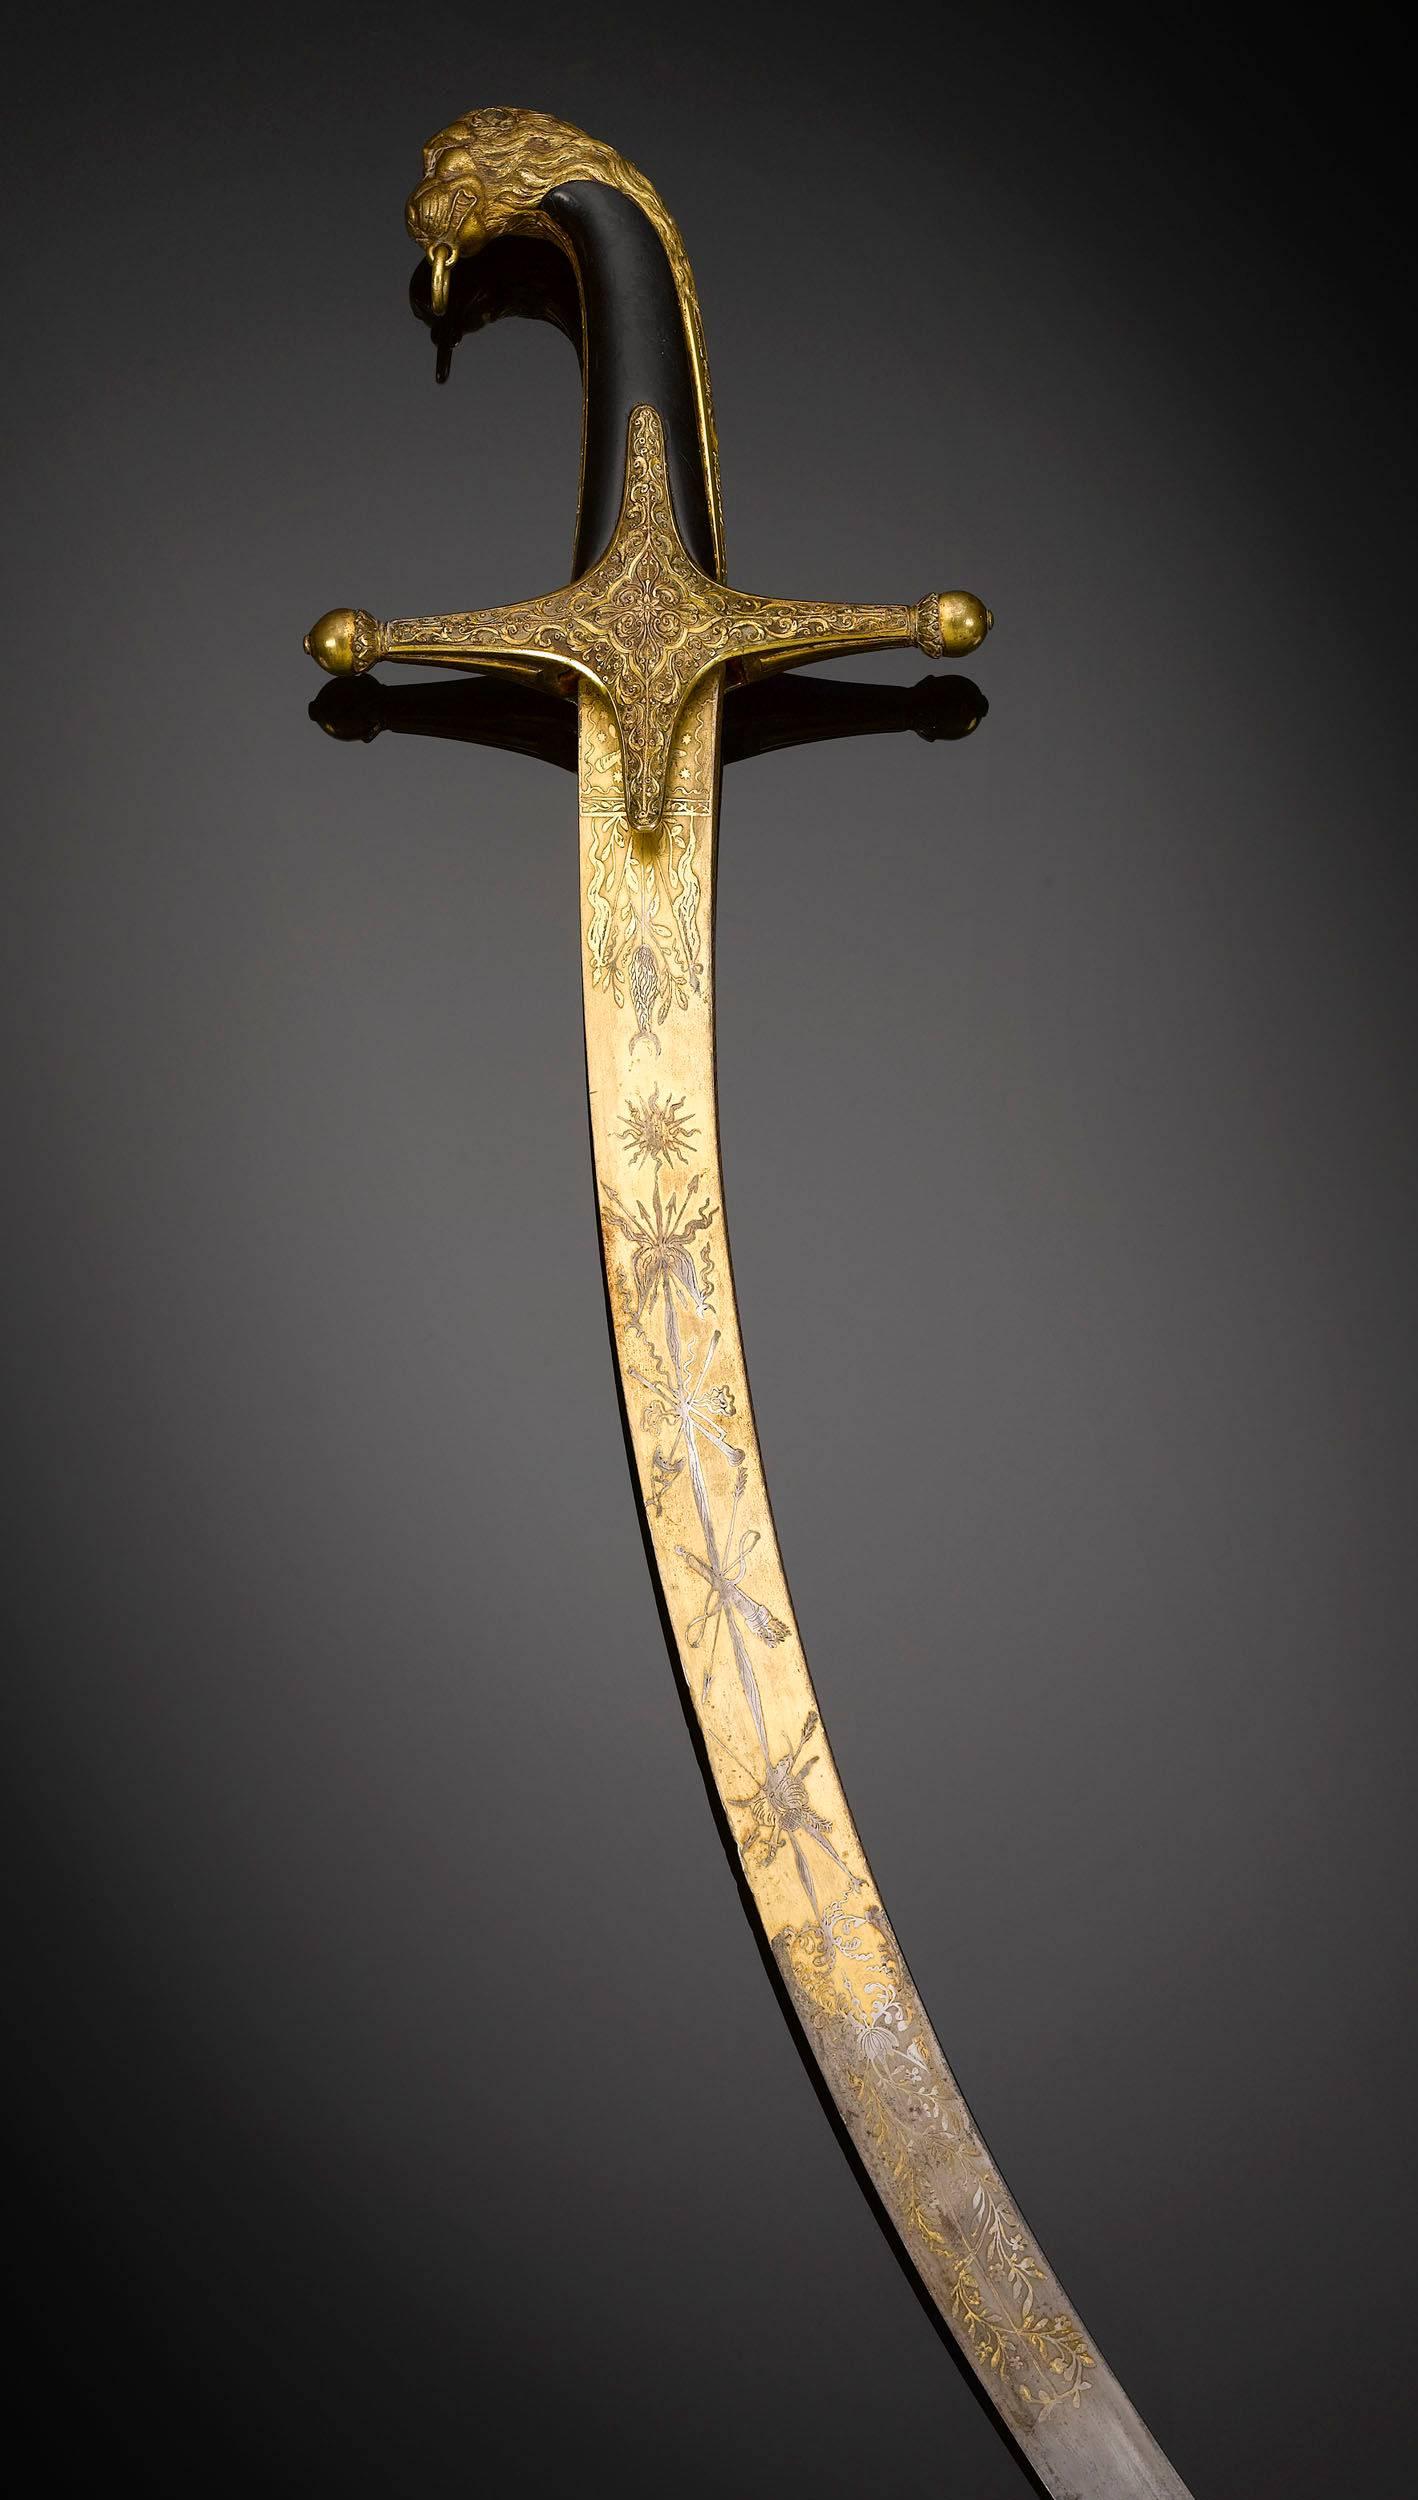 mamaluke sword